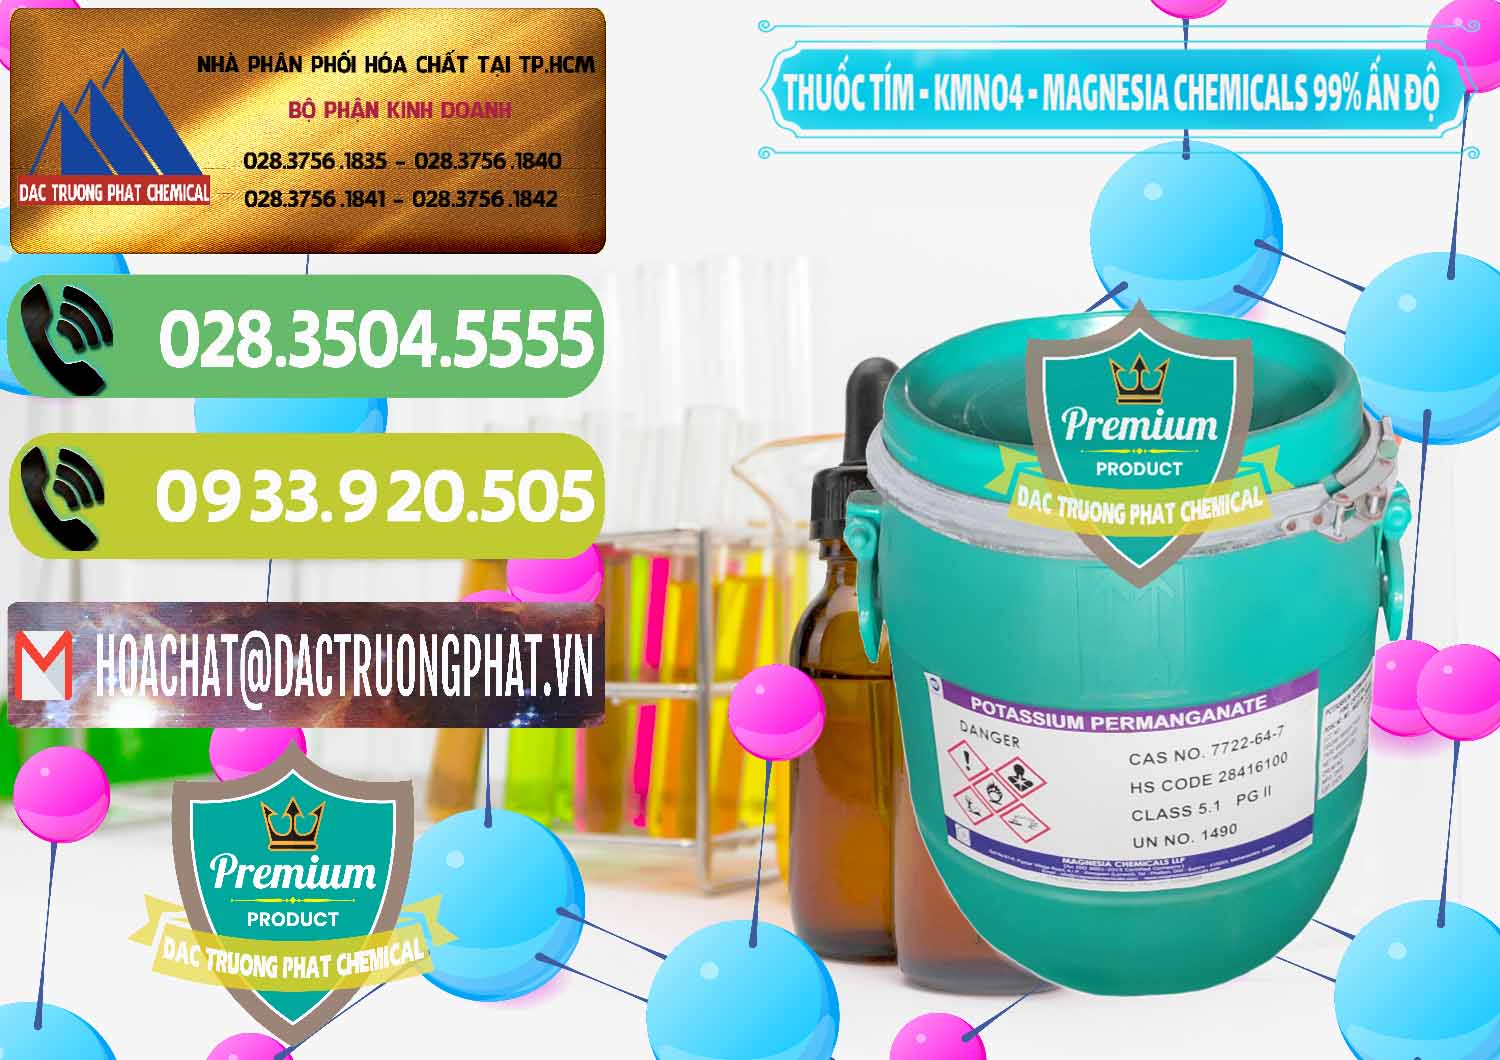 Cty chuyên cung ứng - bán Thuốc Tím - KMNO4 Magnesia Chemicals 99% Ấn Độ India - 0251 - Đơn vị chuyên cung cấp - kinh doanh hóa chất tại TP.HCM - hoachatmientay.vn